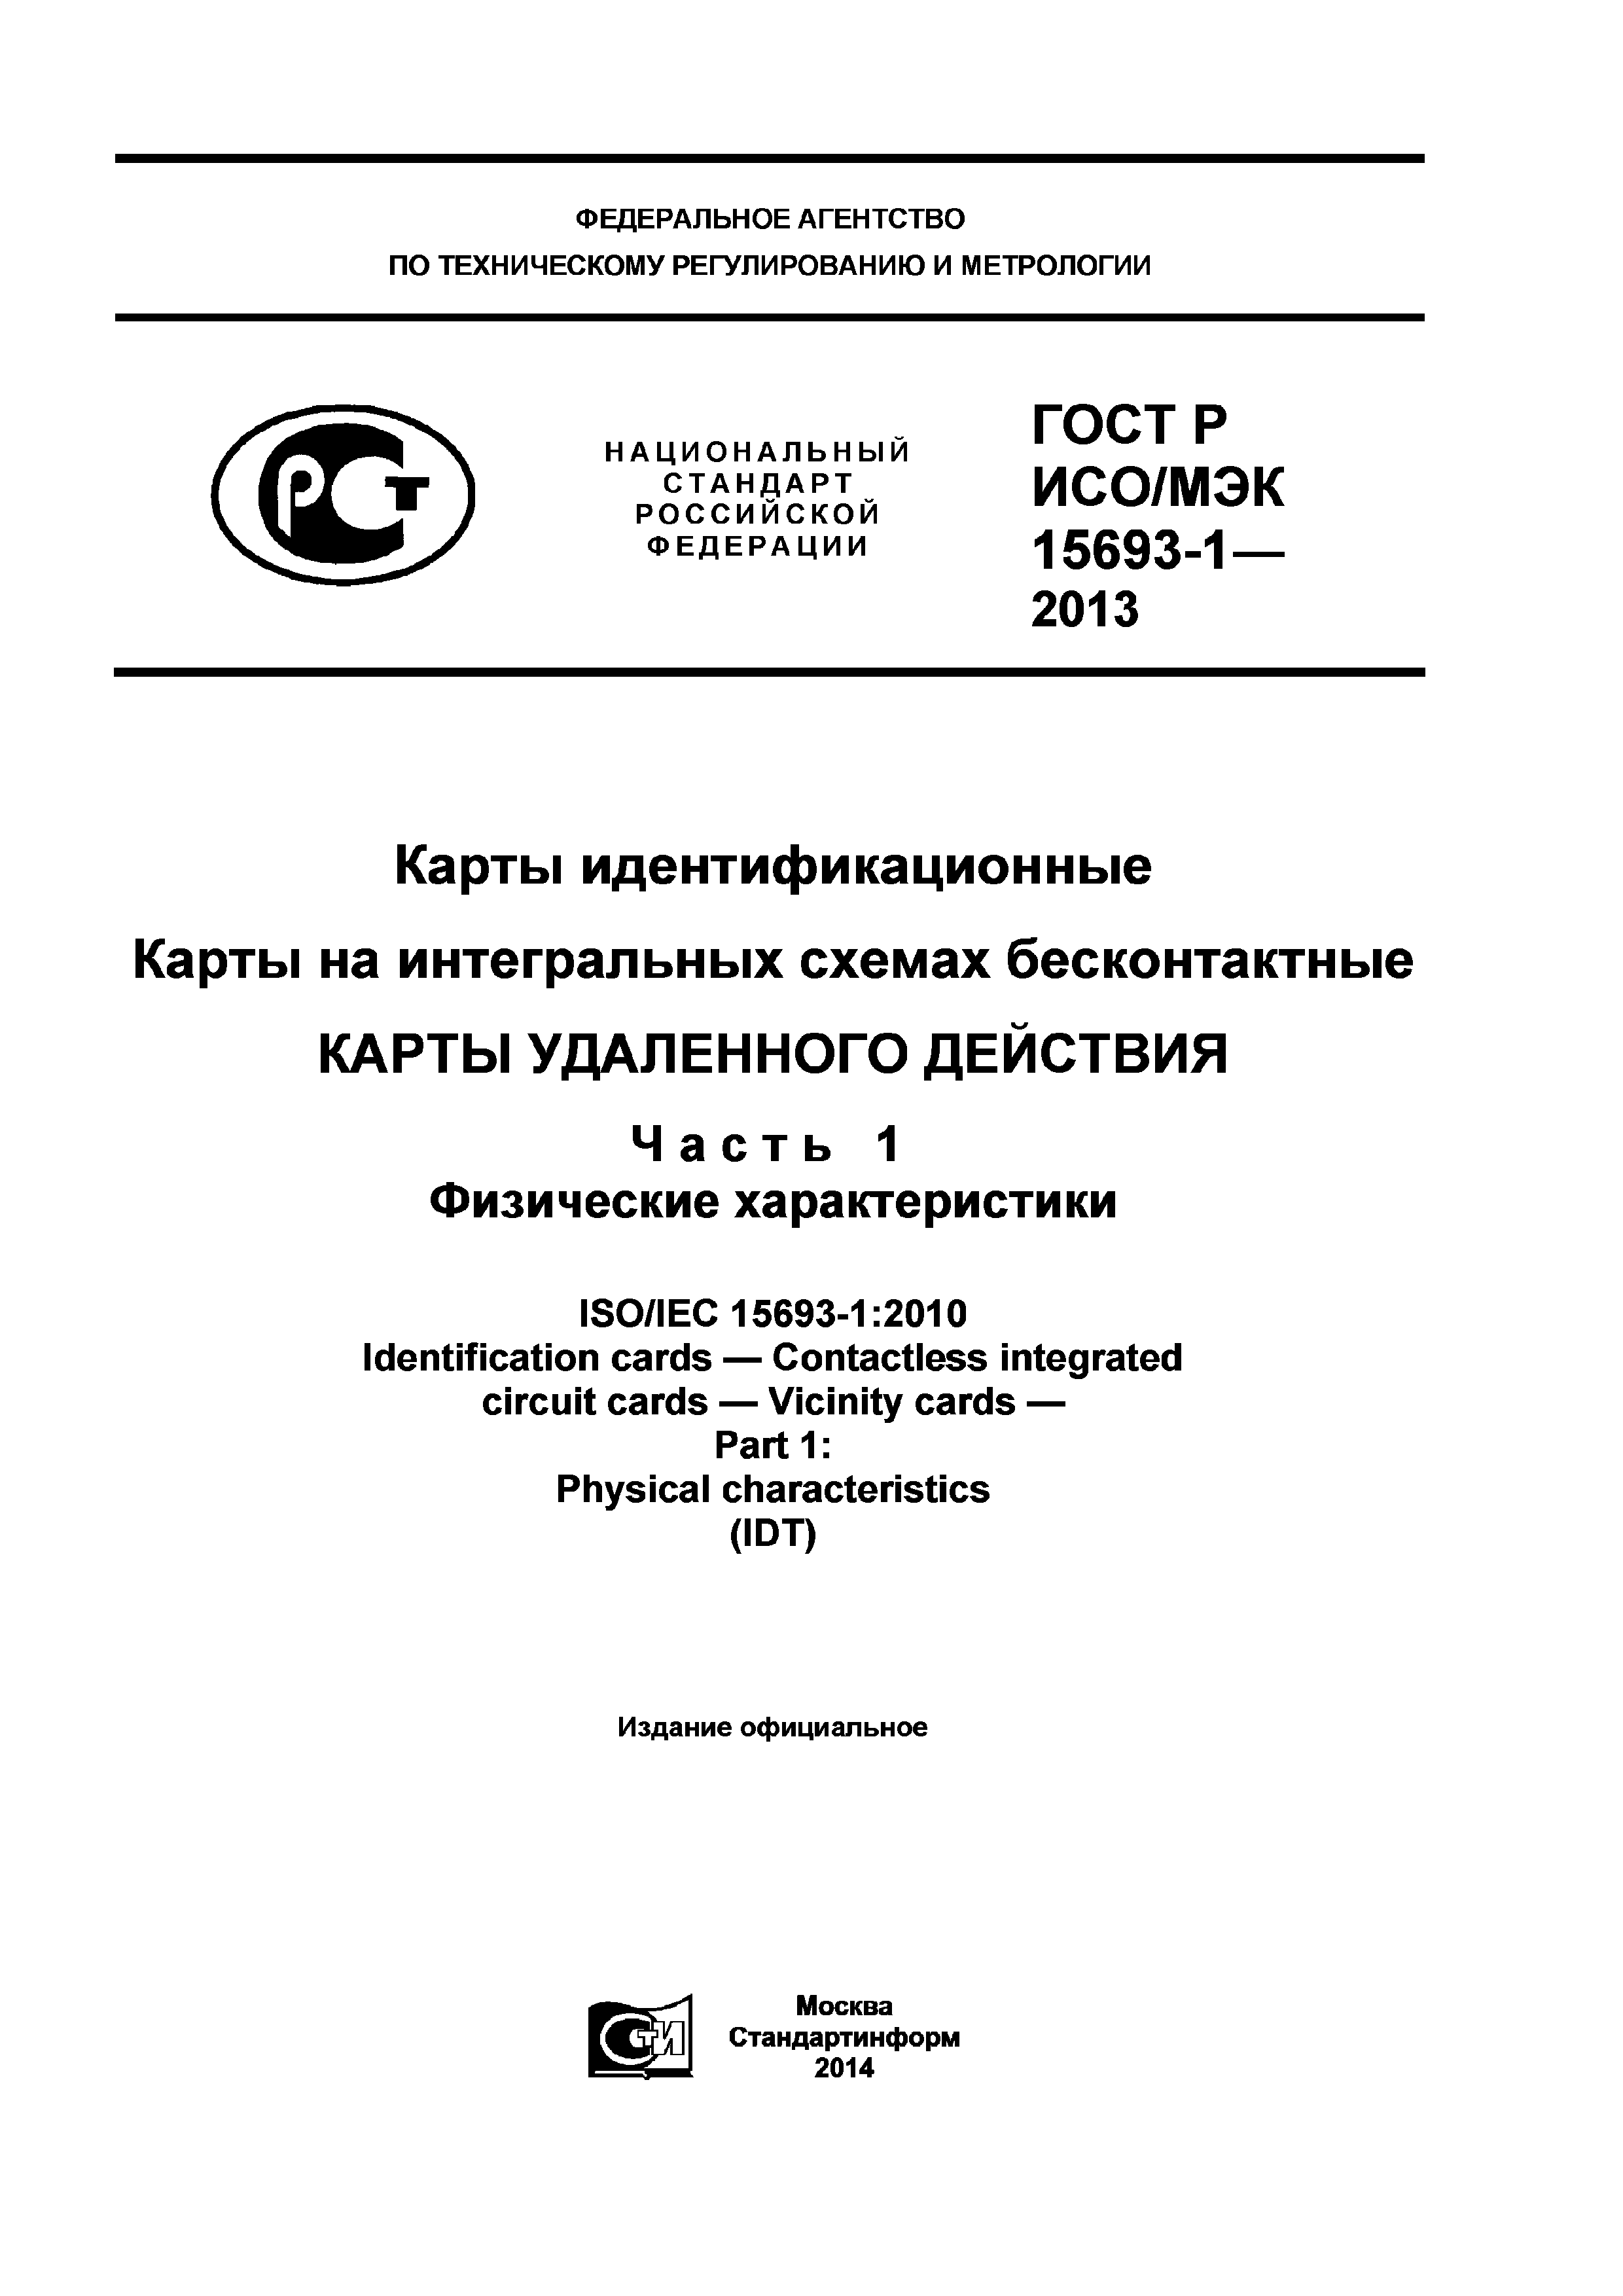 ГОСТ Р ИСО/МЭК 15693-1-2013